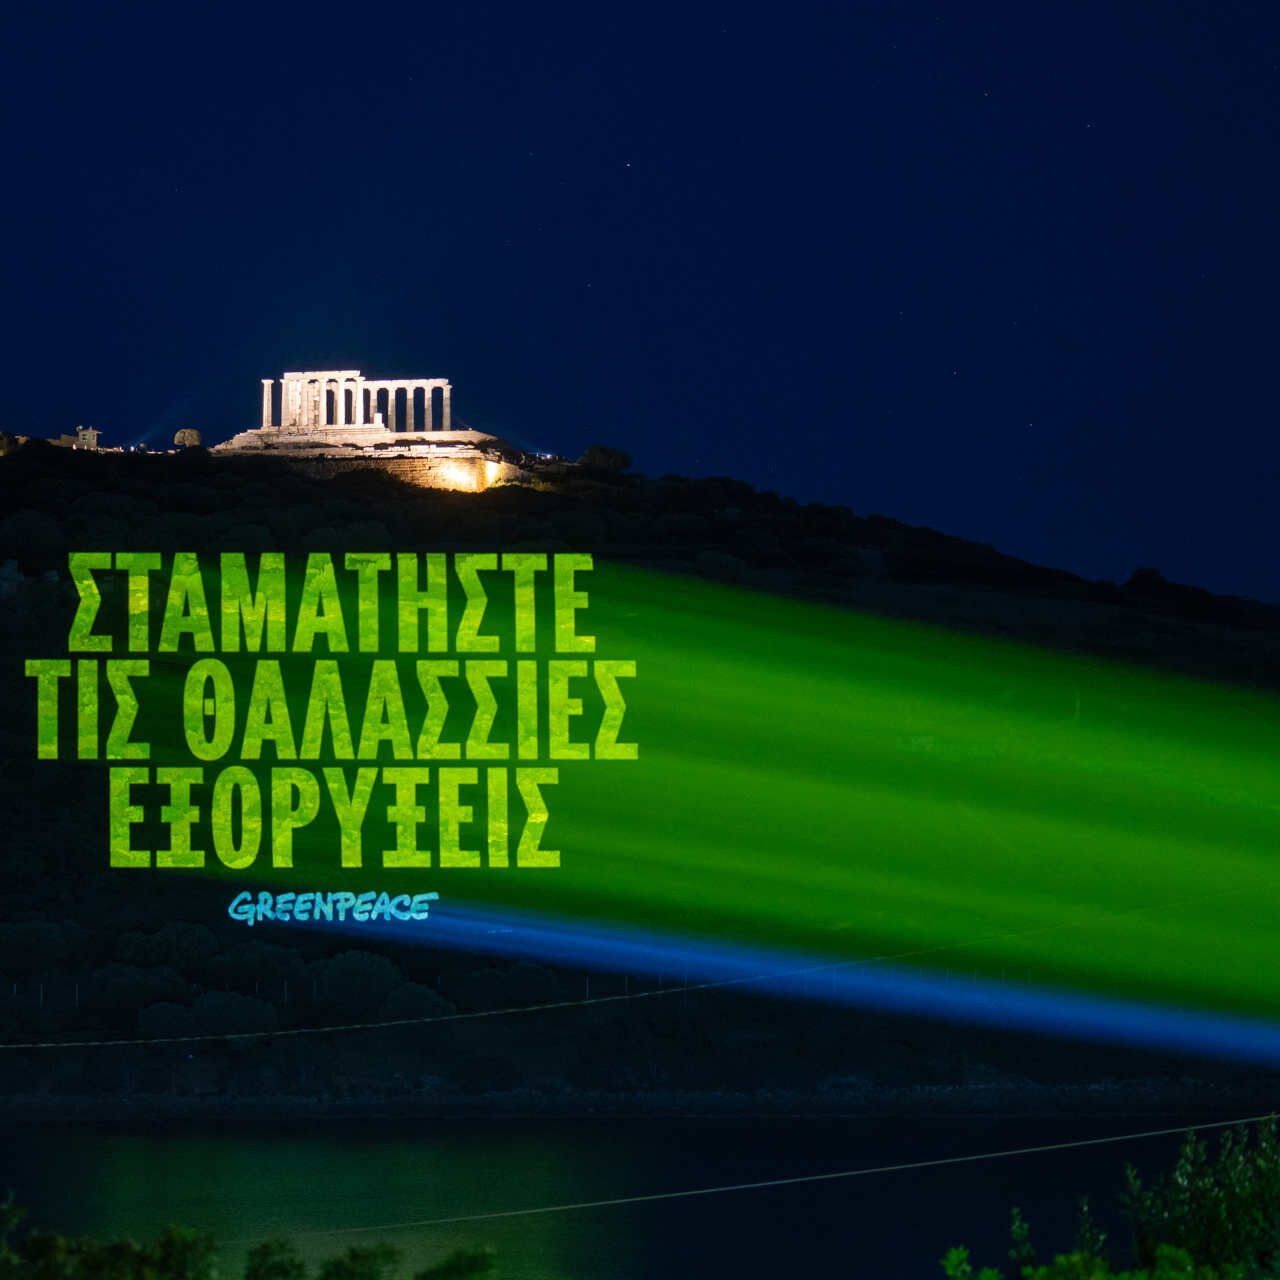 Grecia: il messaggio in greco che recita 